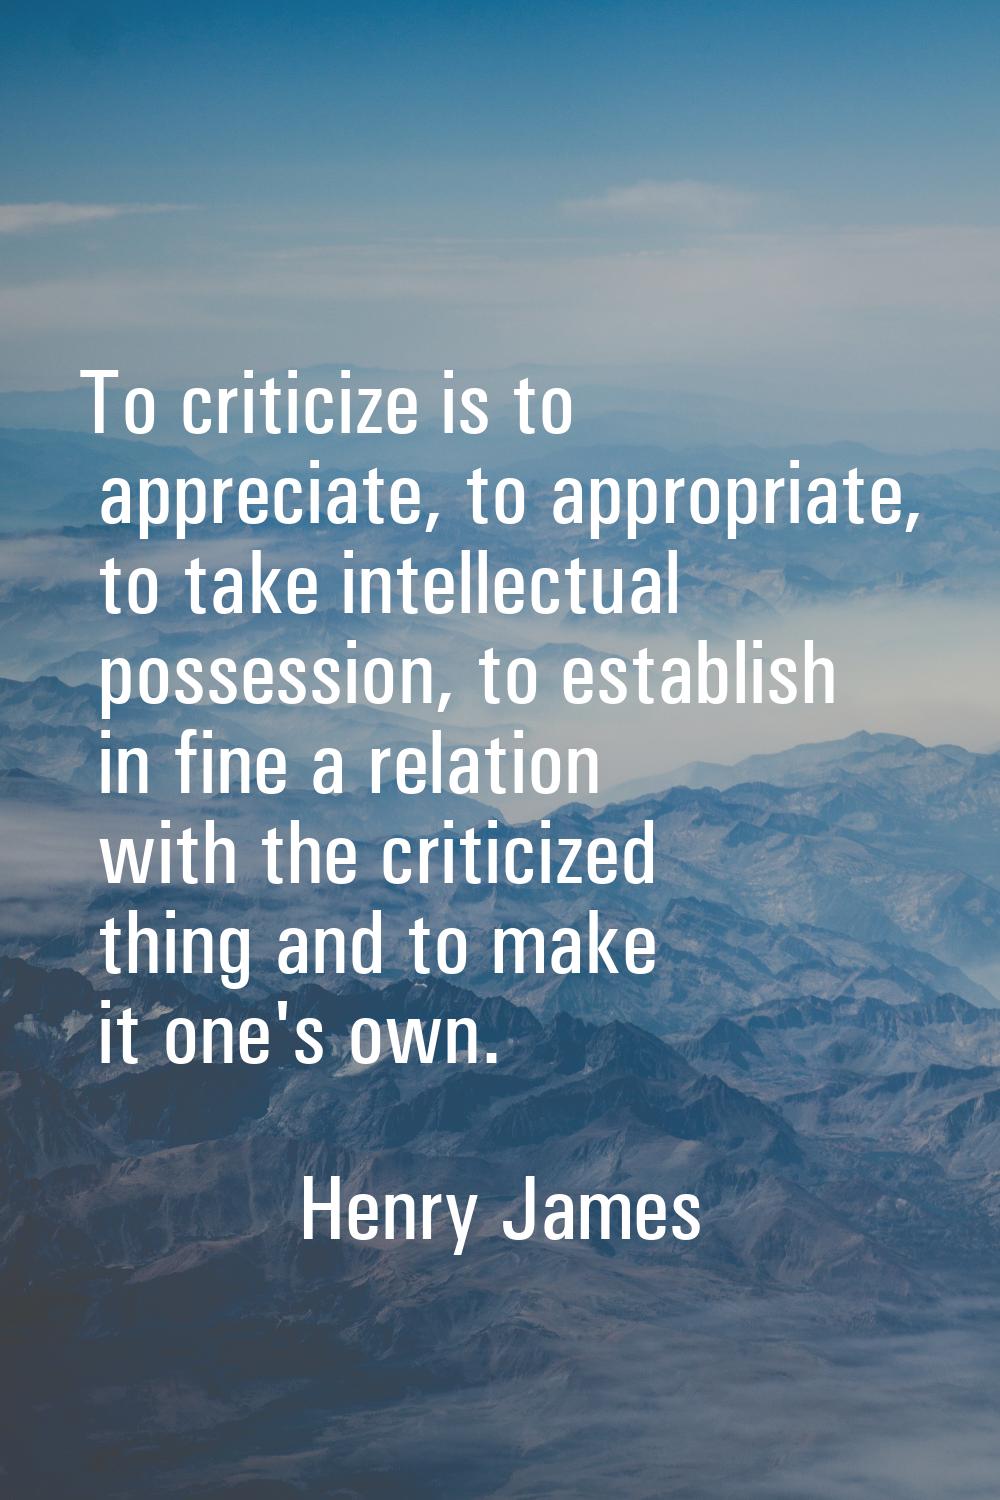 To criticize is to appreciate, to appropriate, to take intellectual possession, to establish in fin